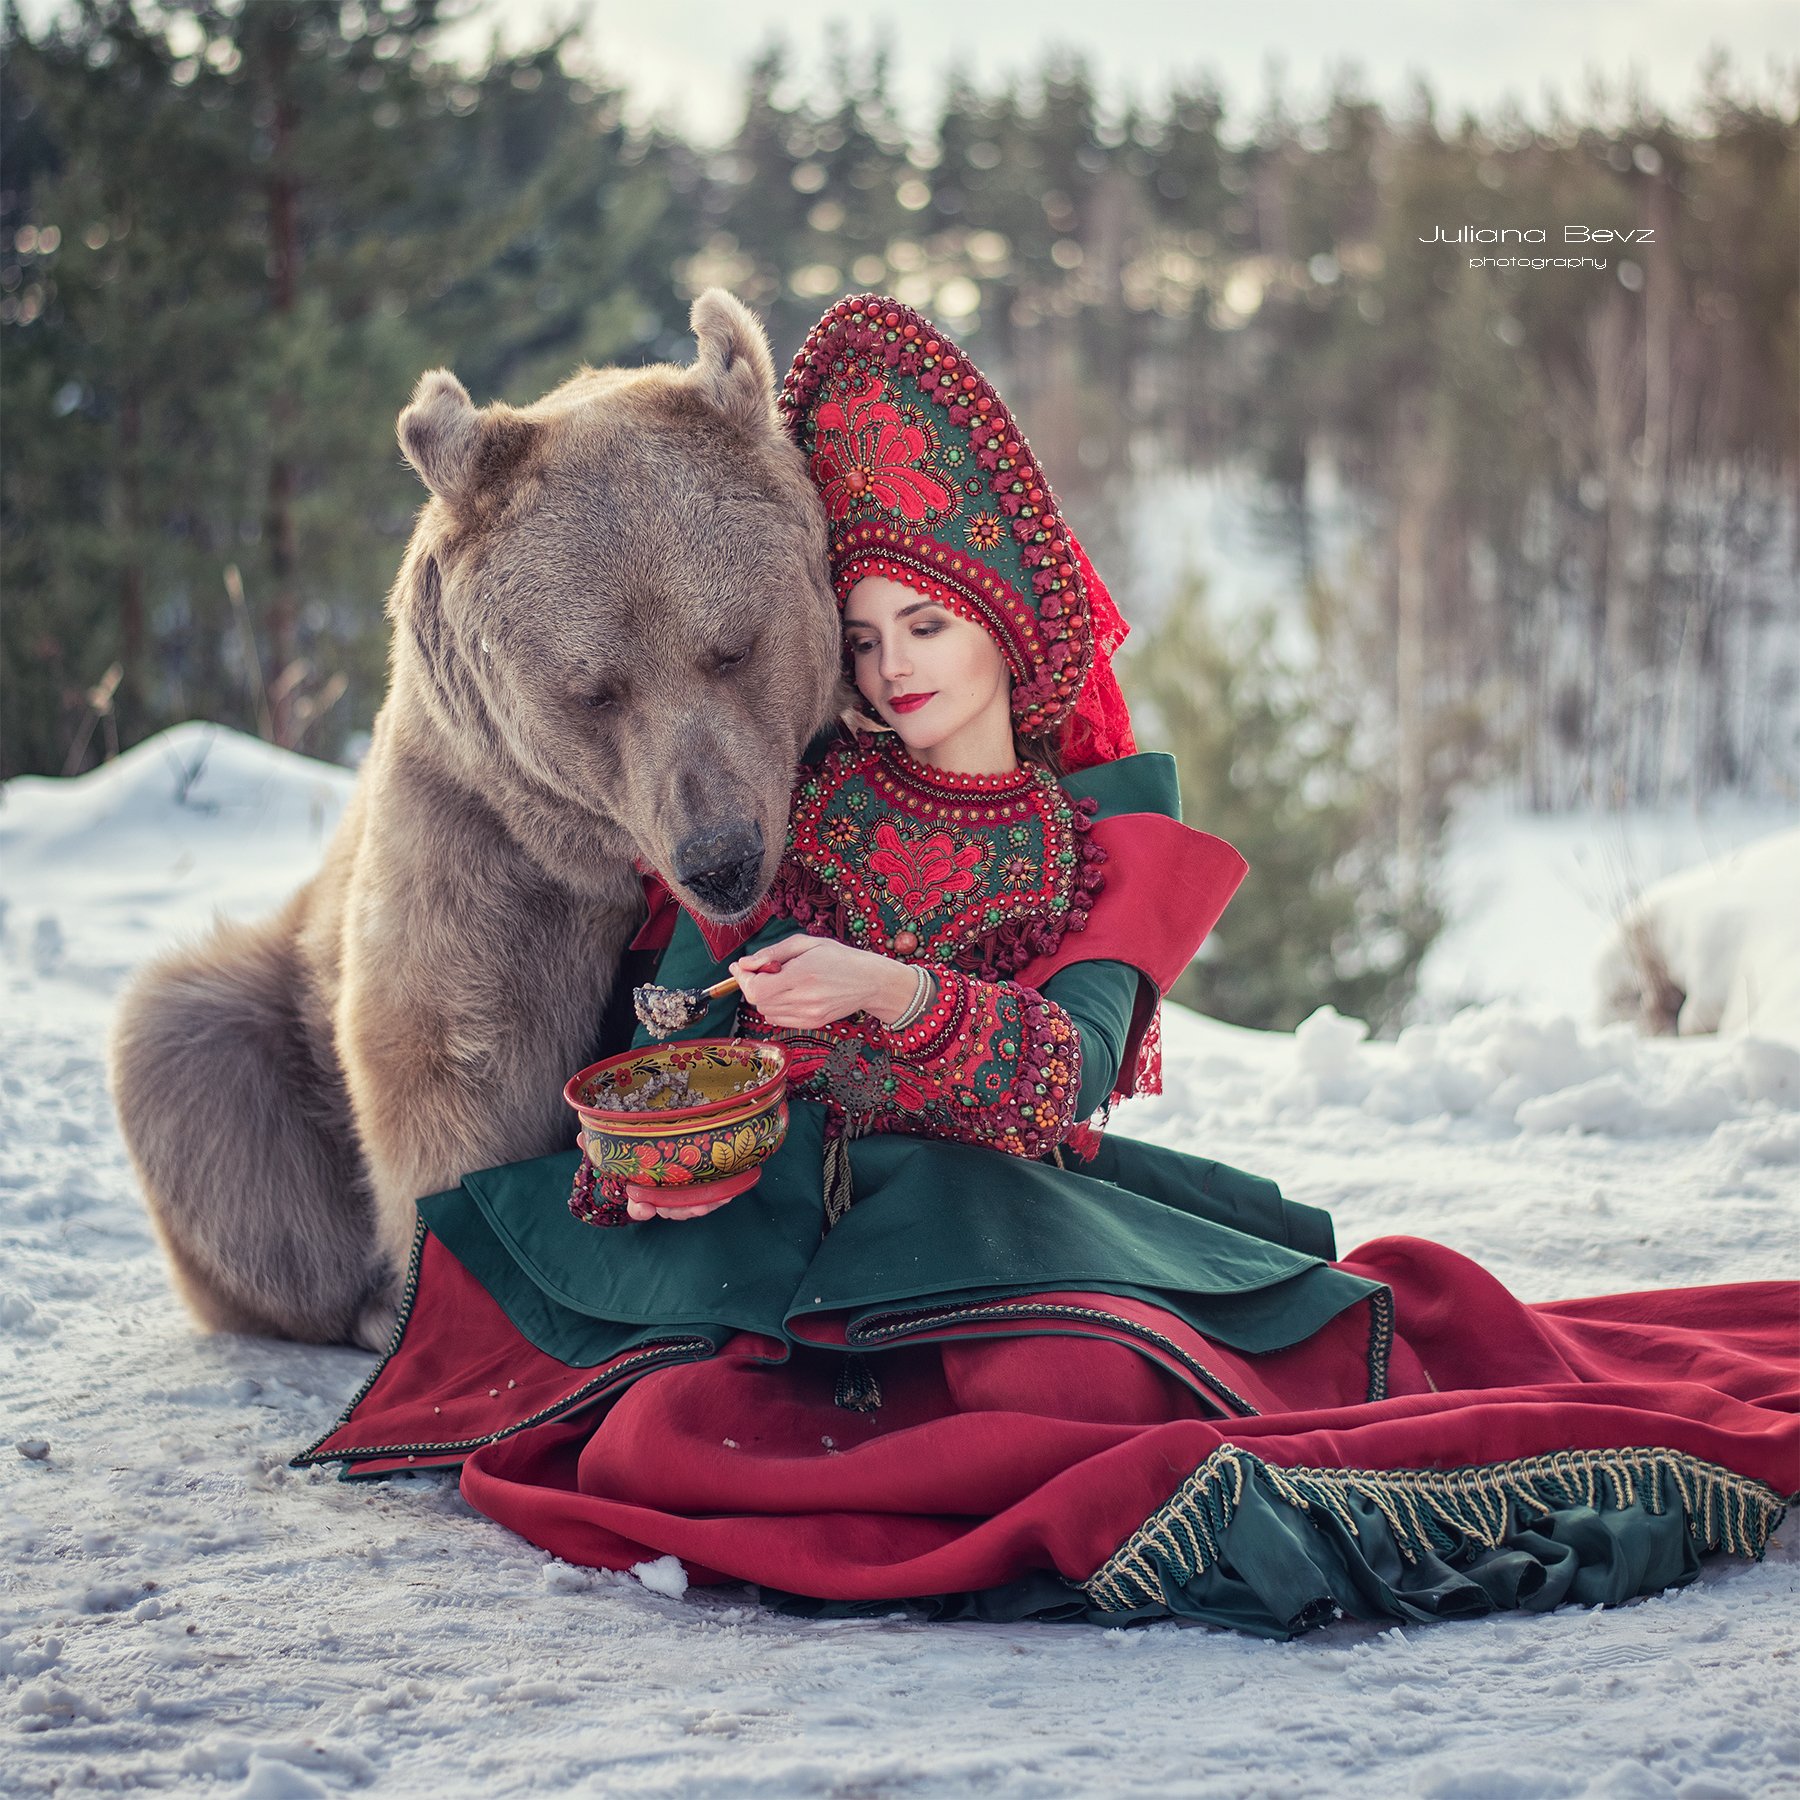 медведь, зима, русский стиль, россия, кокошник, наряд, снег, Juliana Bevz